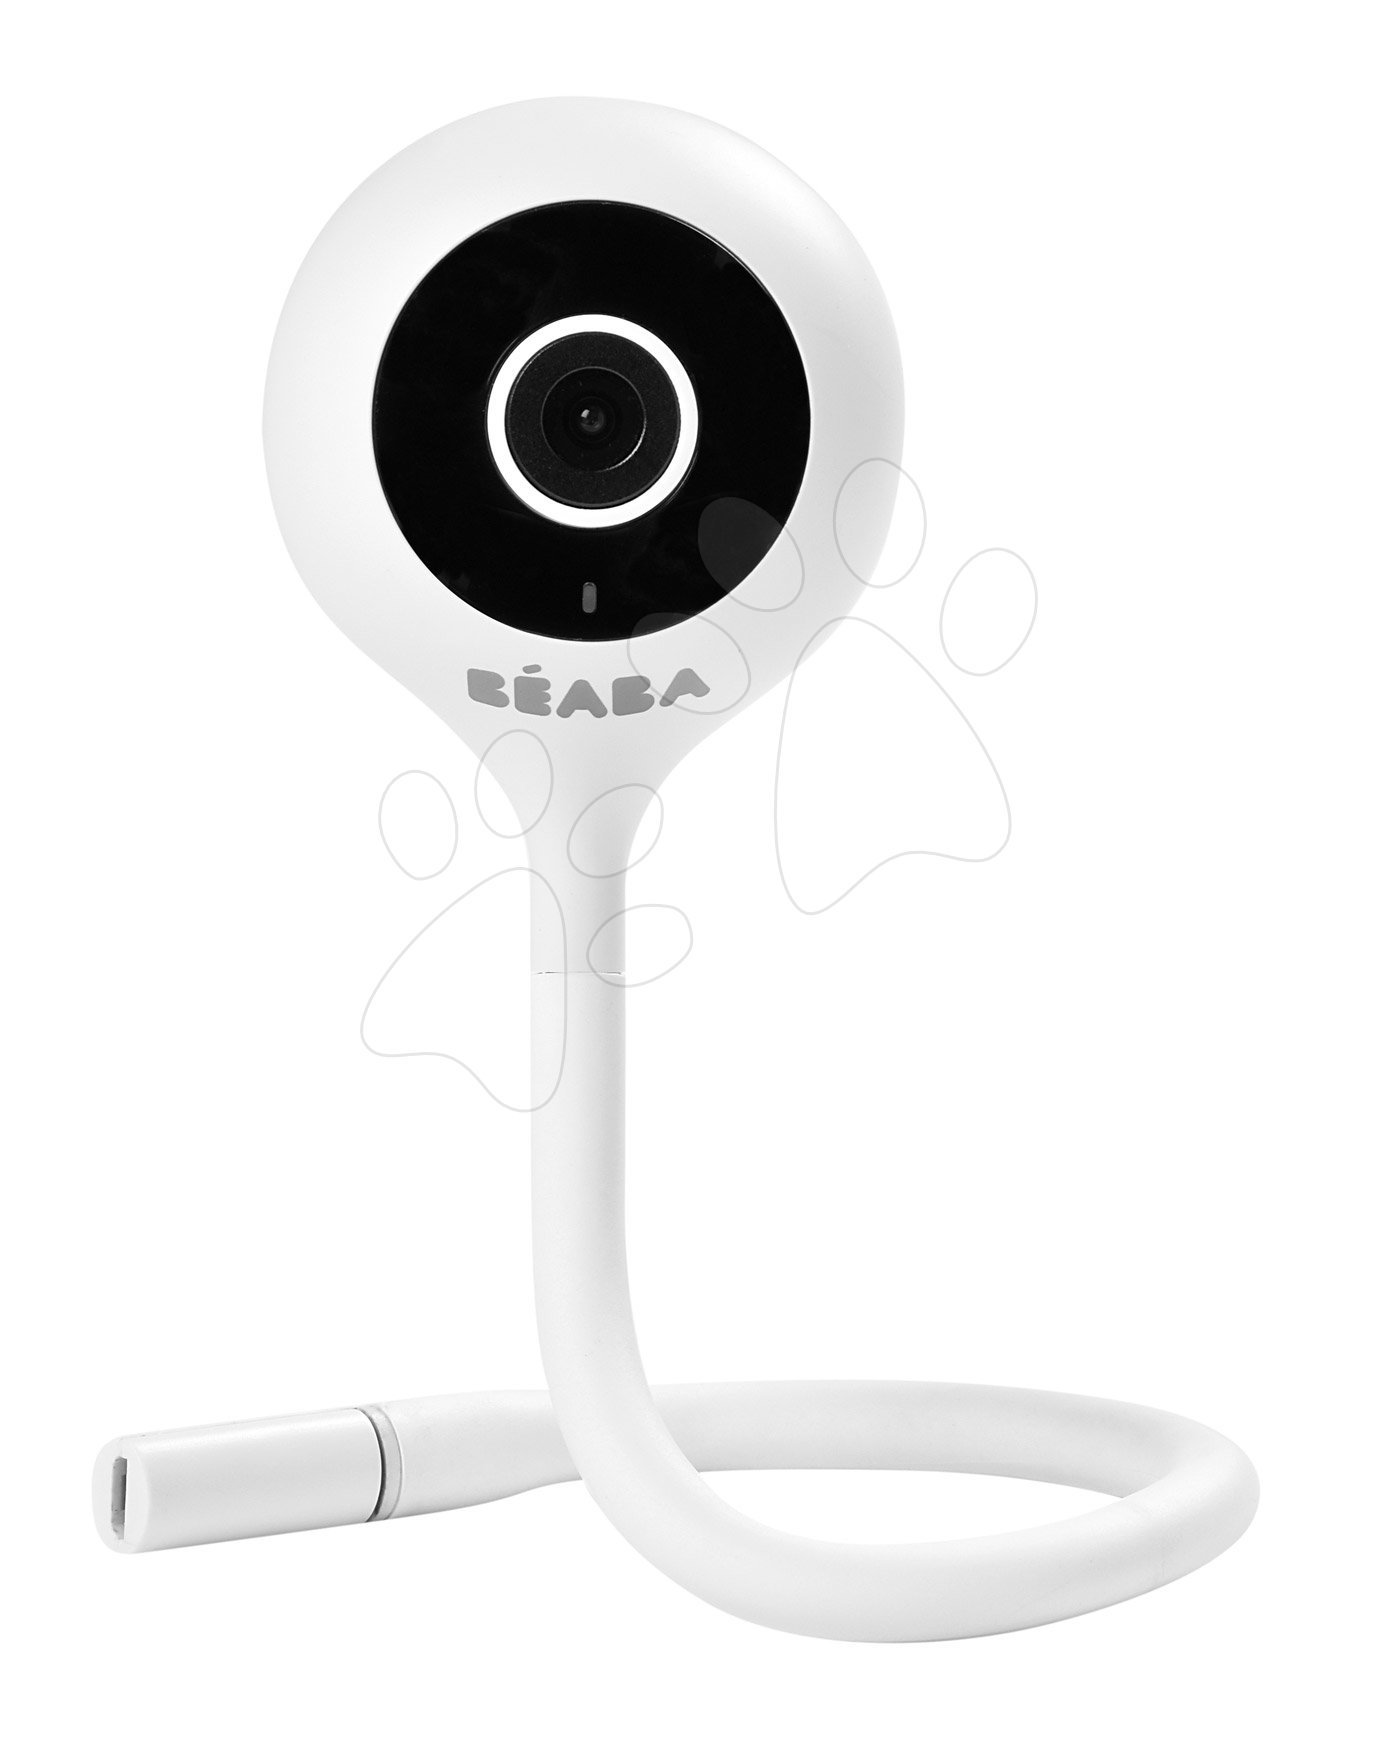 Elektronske varuške - Elektronska varuška New Video Baby monitor ZEN Connect White Beaba s priključkom na telefon (Android in iOS) z infrardečim nočnim vidom